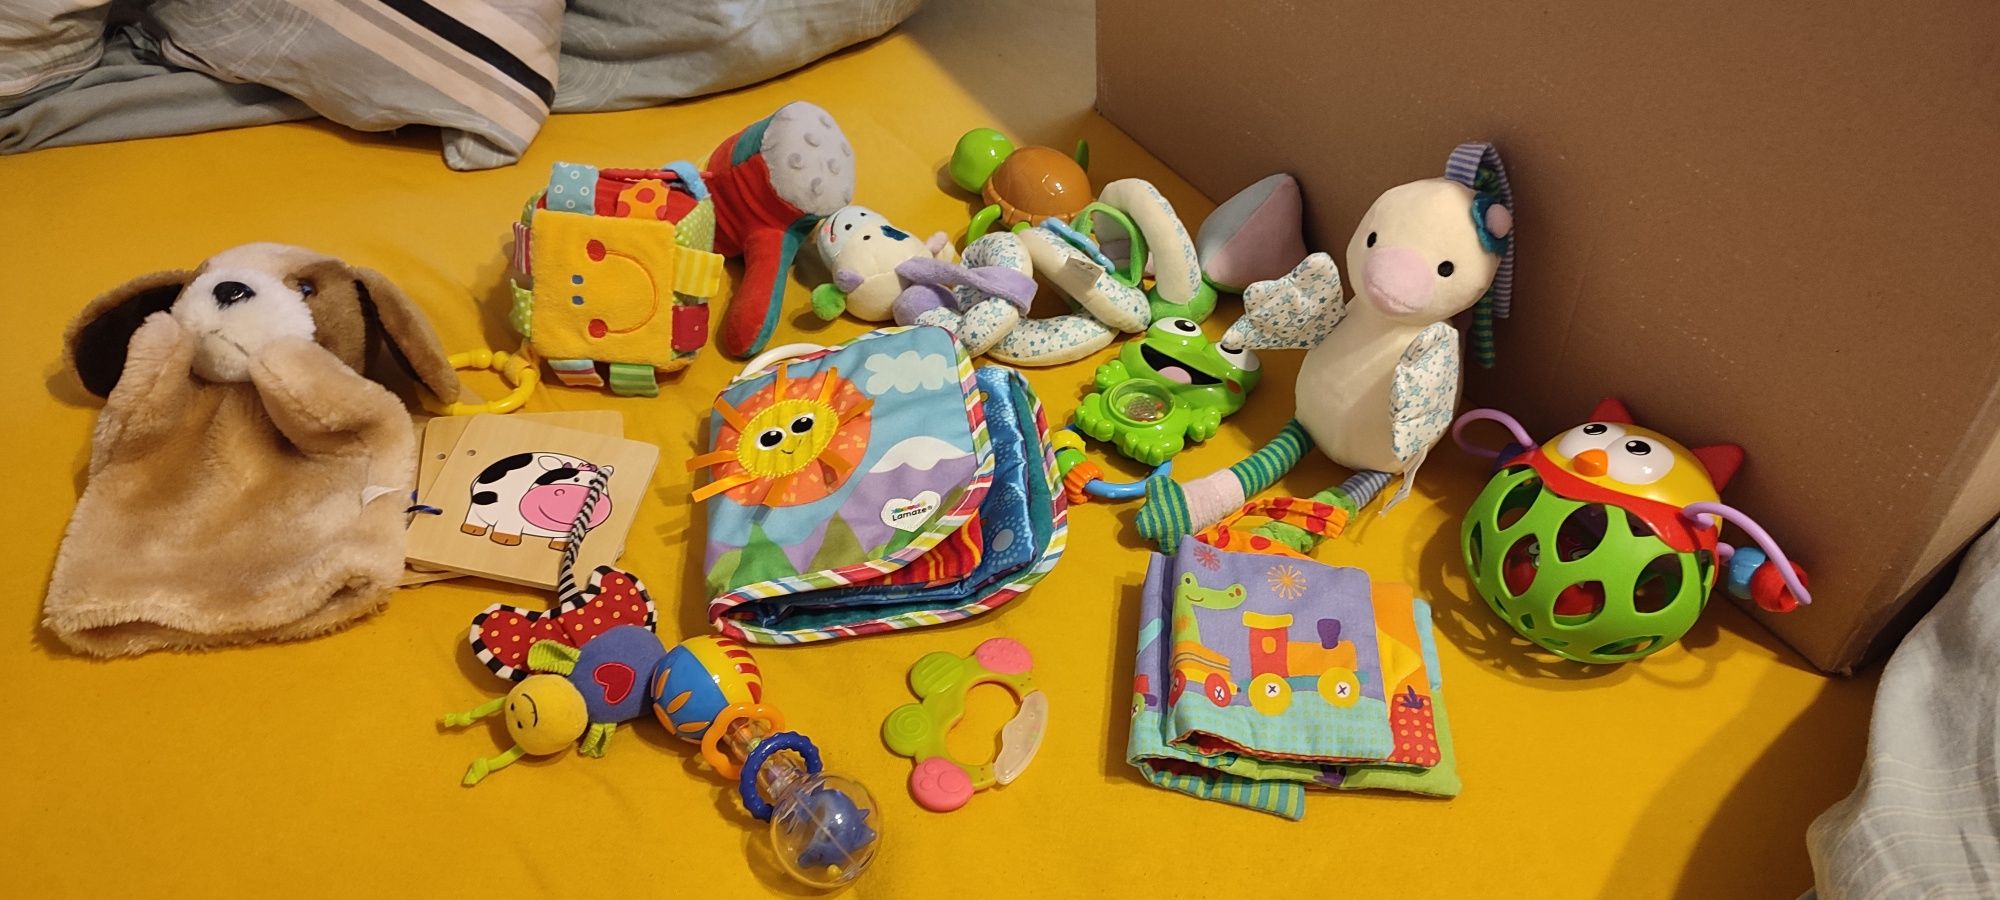 Zabawki niemowlęce, grzechotki, książeczki, pluszaki